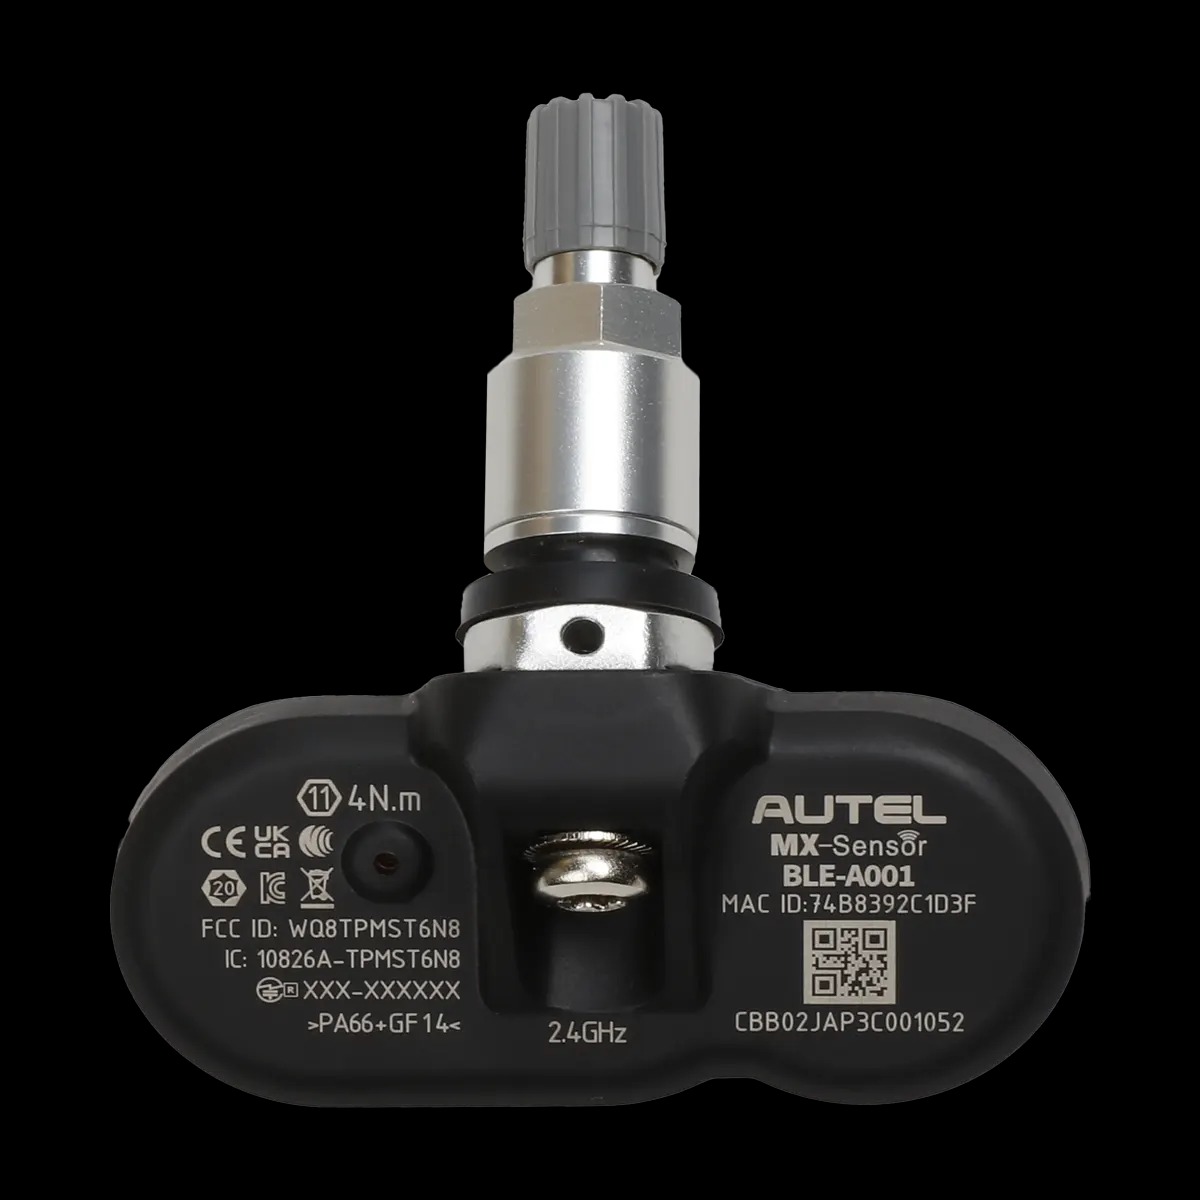 Picture of Autel AU300100 Bluetooth MX-Sensor for Vehicle